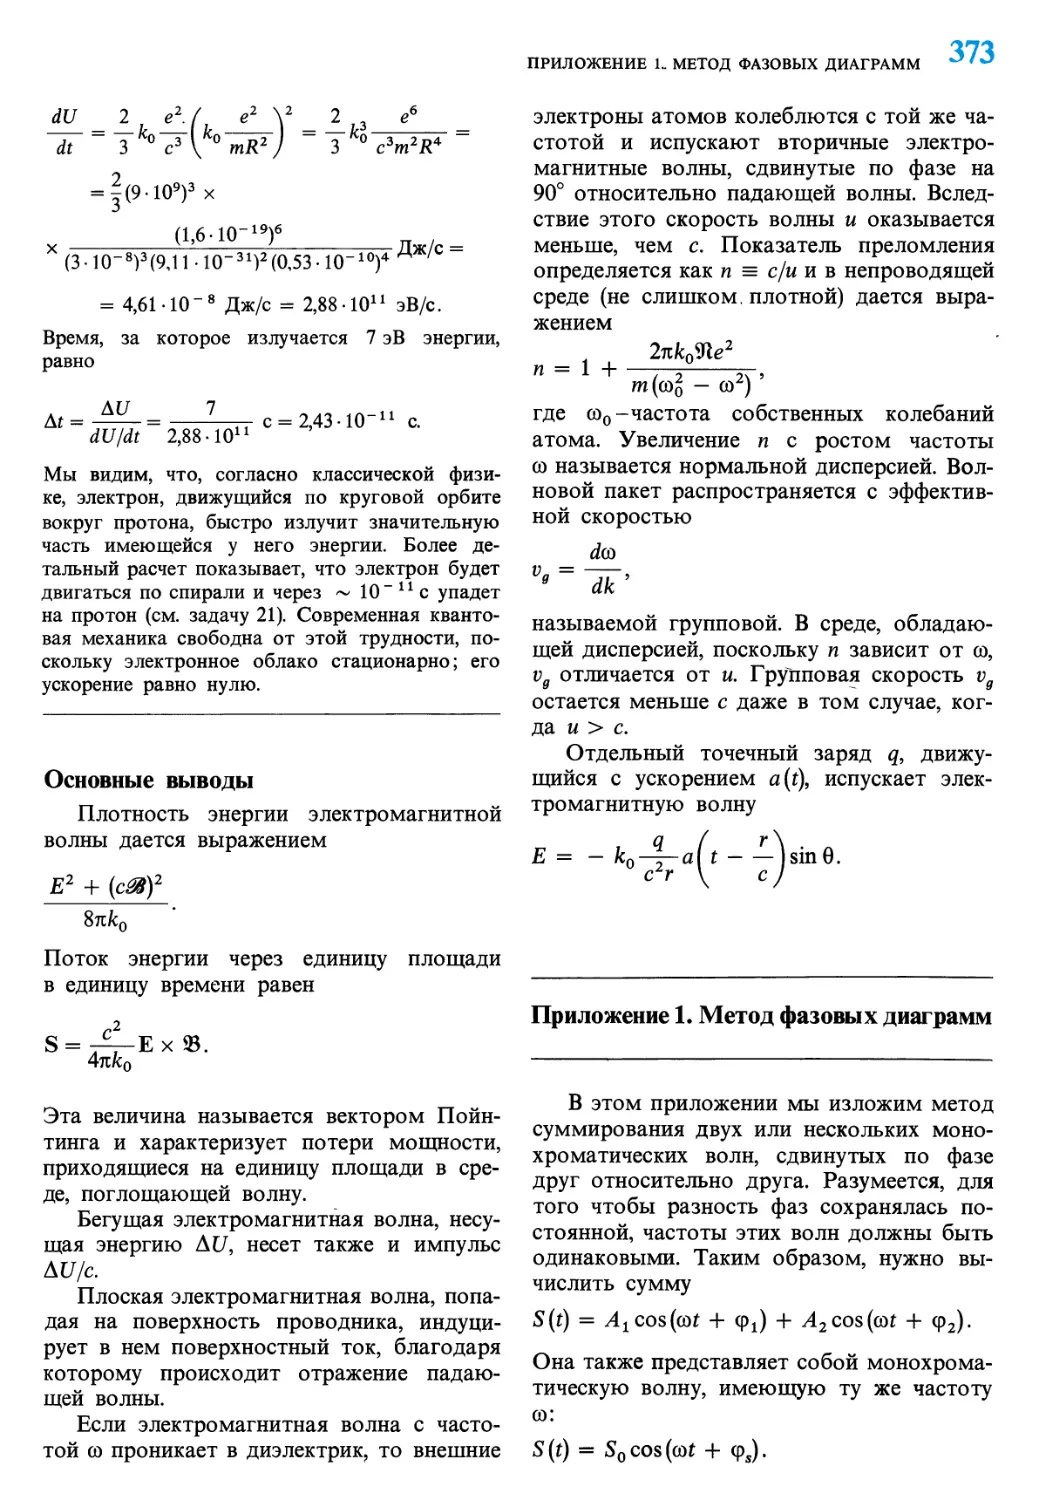 Основные выводы
Приложение 1. Метод фазовых диаграмм